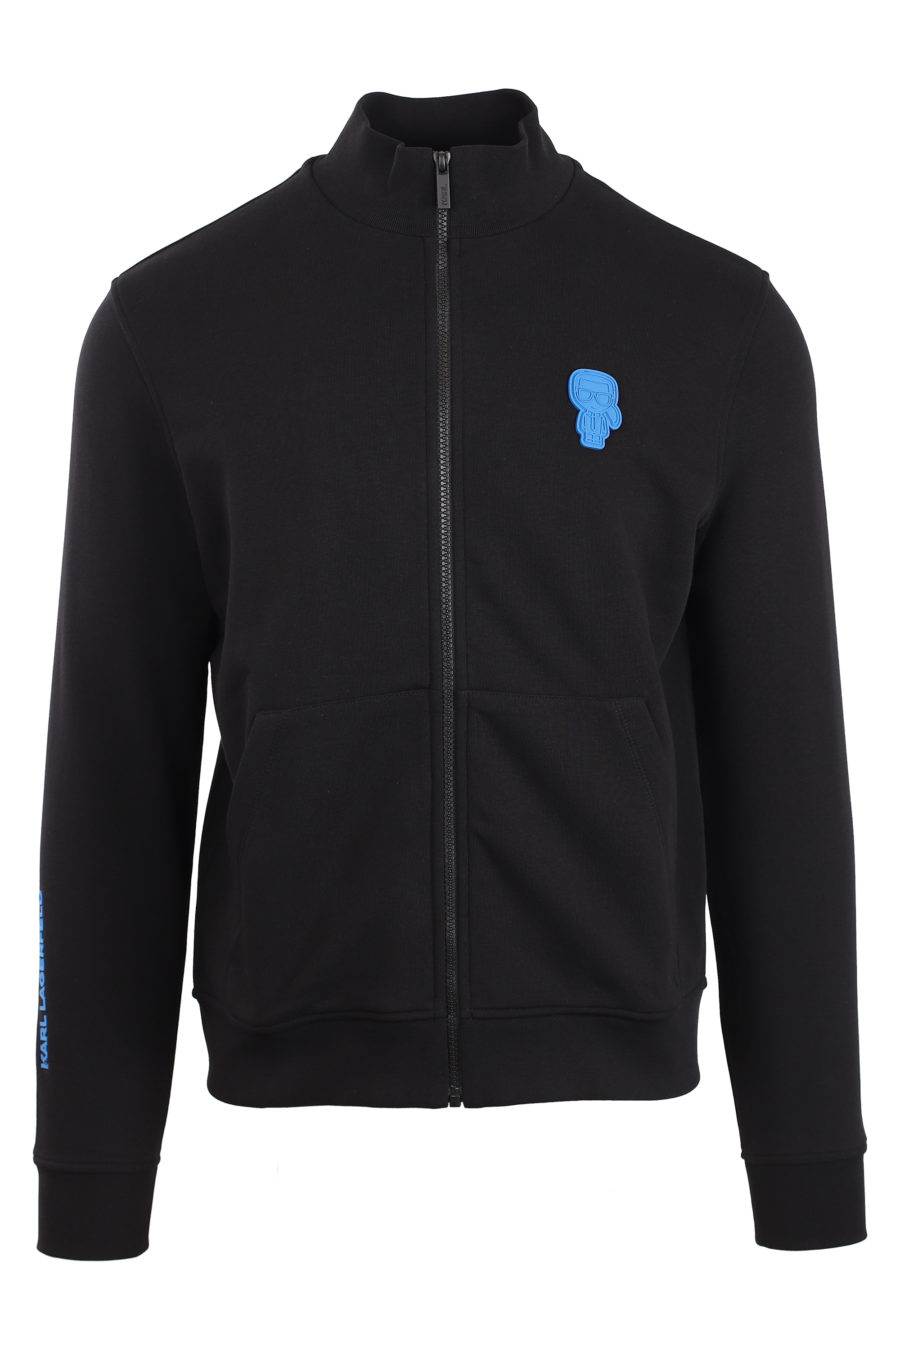 Schwarze Jacke mit kleinem blauen Logo - IMG 0902